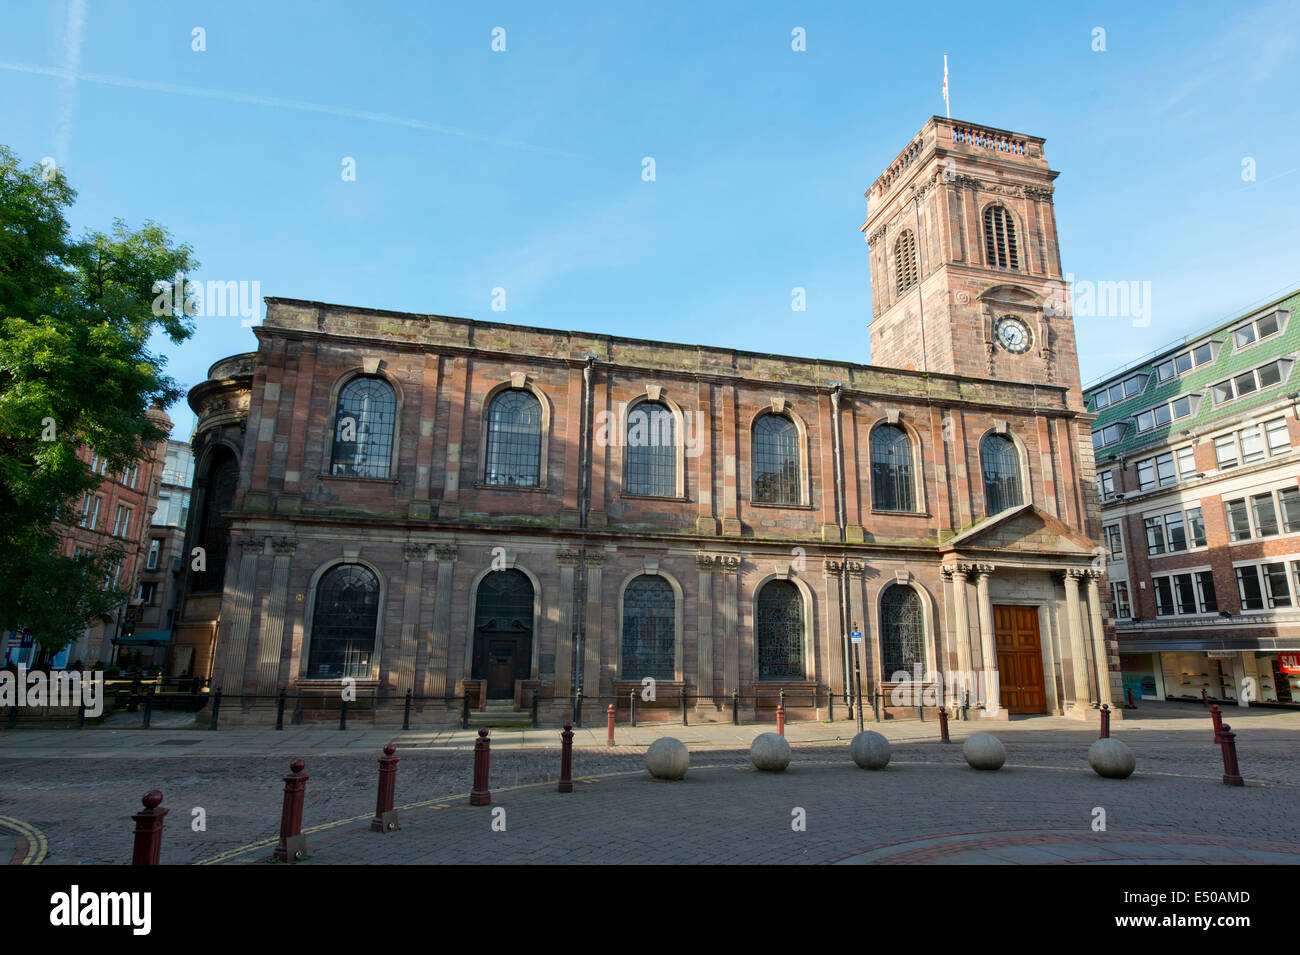 St Ann's Church situé dans St Ann's Square Salon du centre-ville de Manchester. Banque D'Images